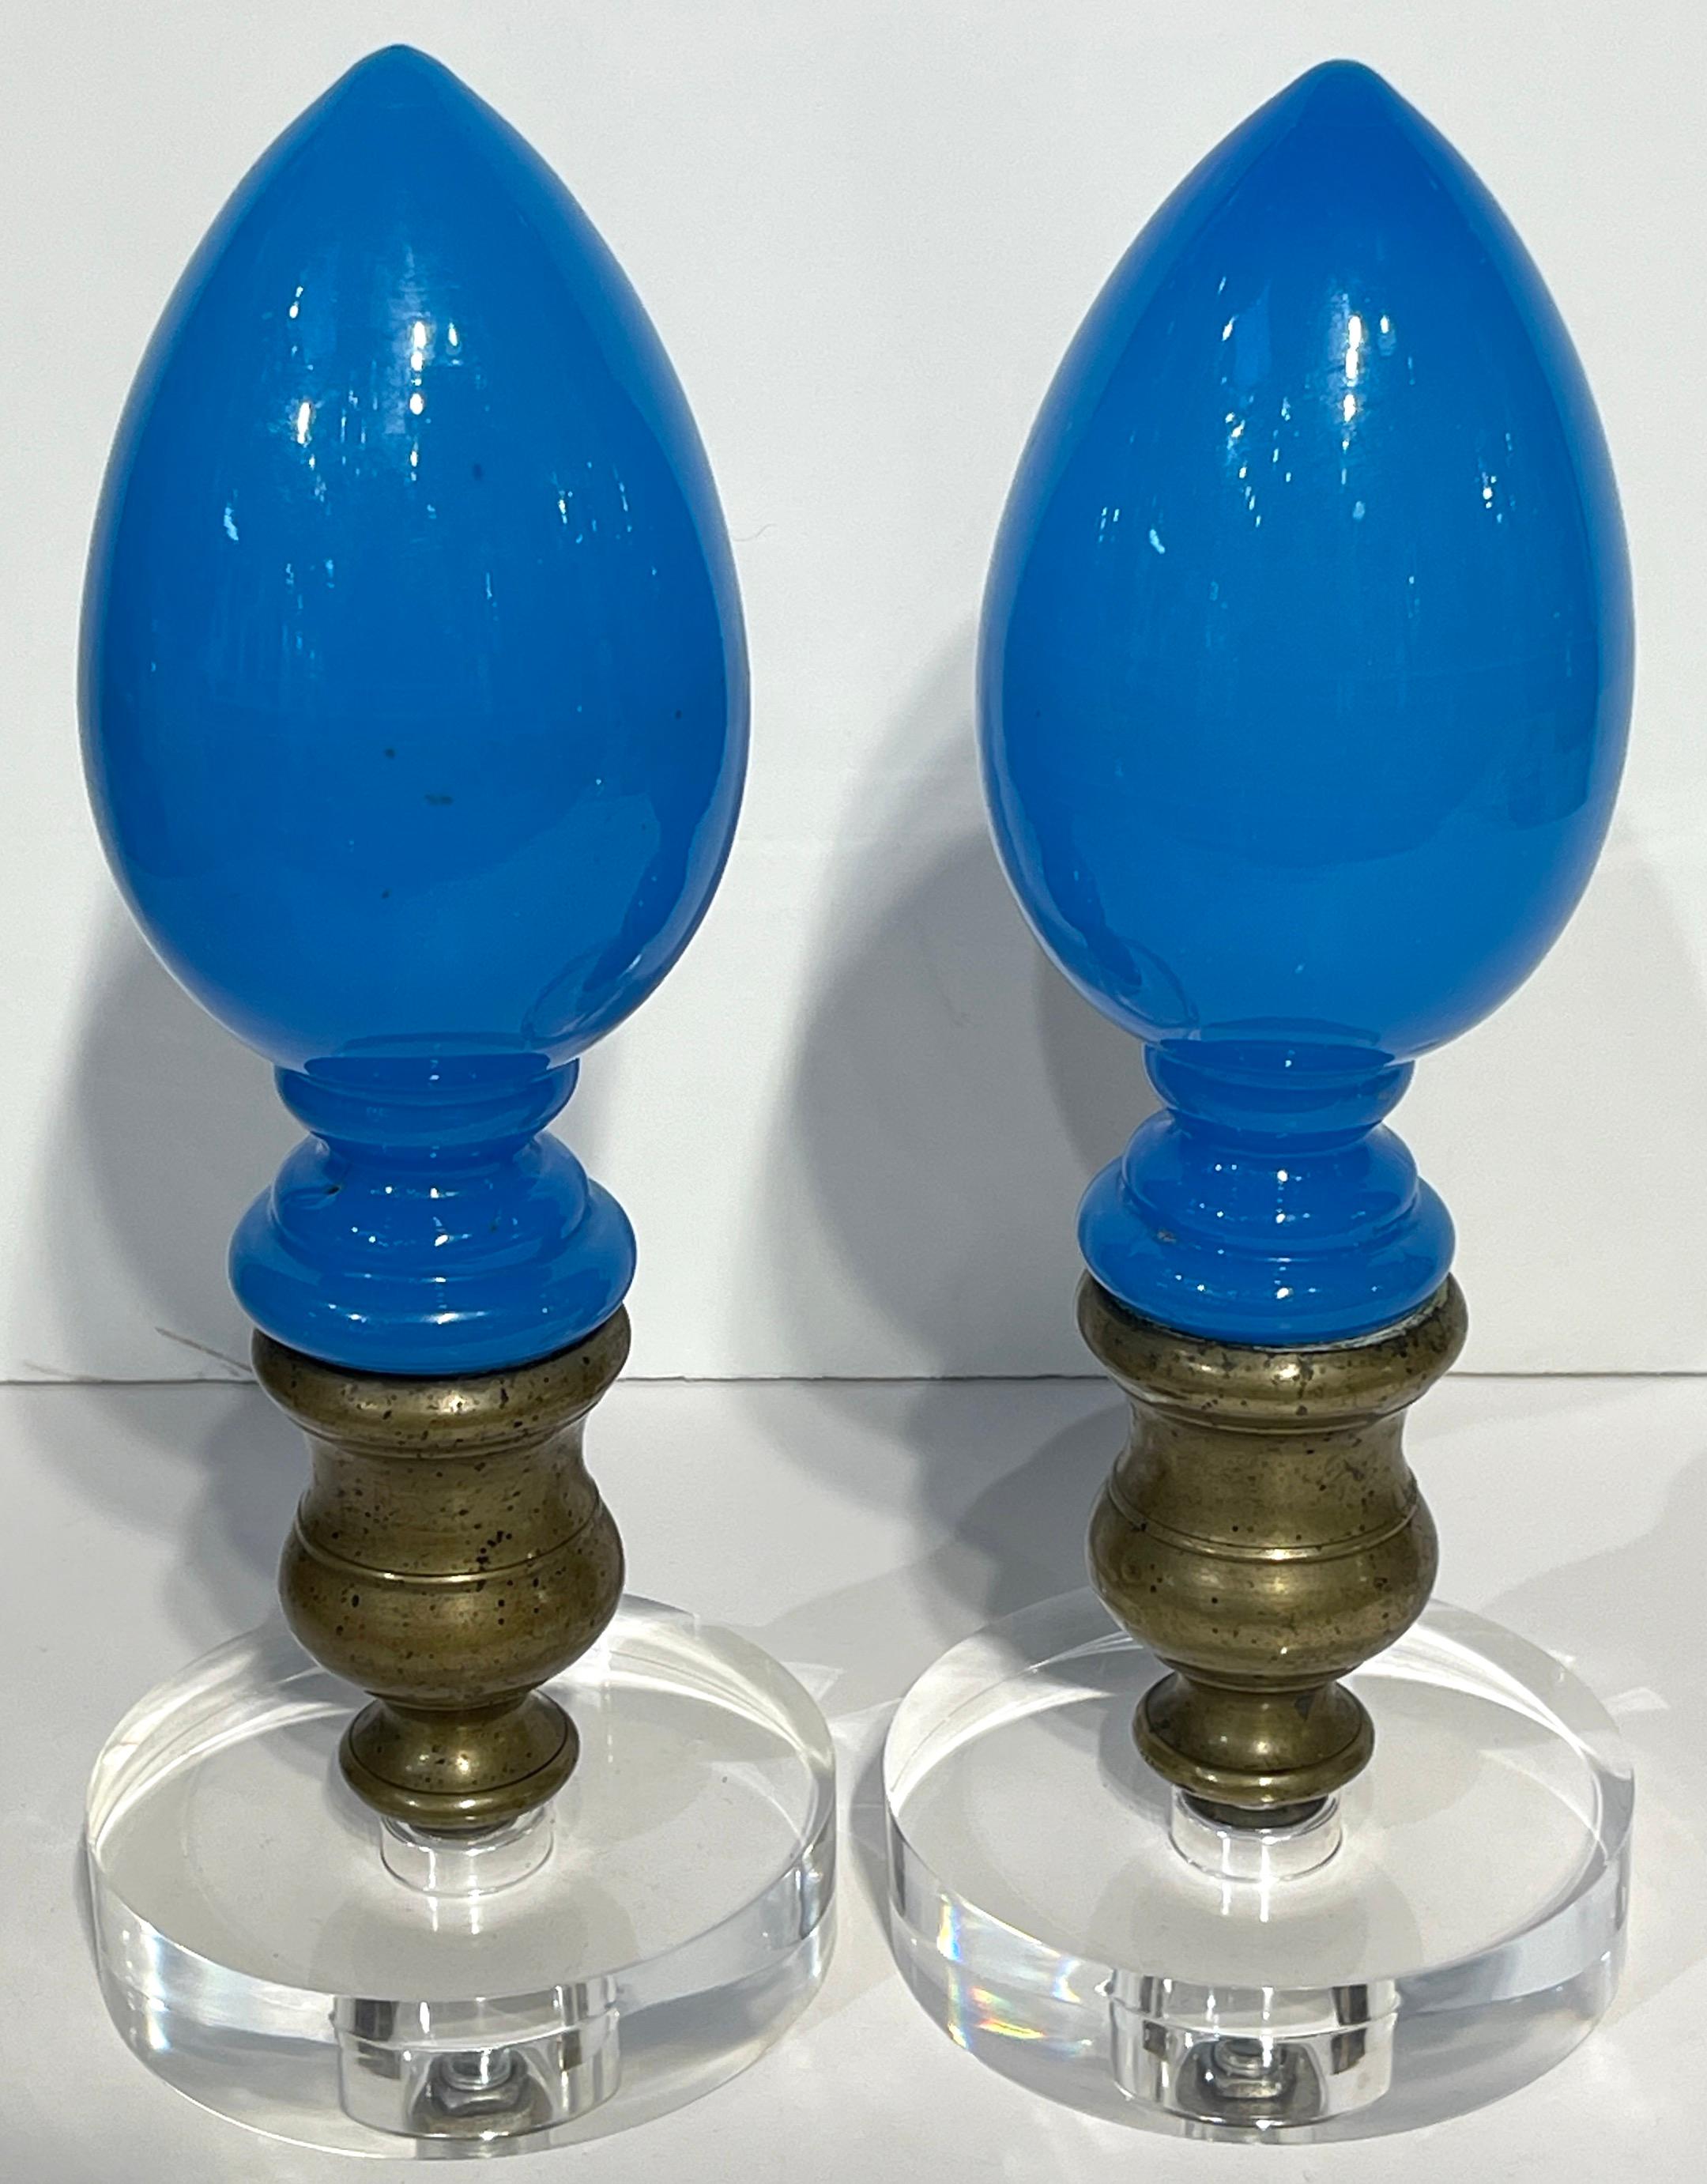 Newel-Post aus blauem Opal und Lucite im Stil Napoleons III., einzeln verkauft 
Frankreich, ca. 1850

Verschönern Sie Ihr Interieur mit diesen exquisiten Napoleon III Blue Opaline & Lucite Newel Posts, jedes ein einzigartiges Stück französischer